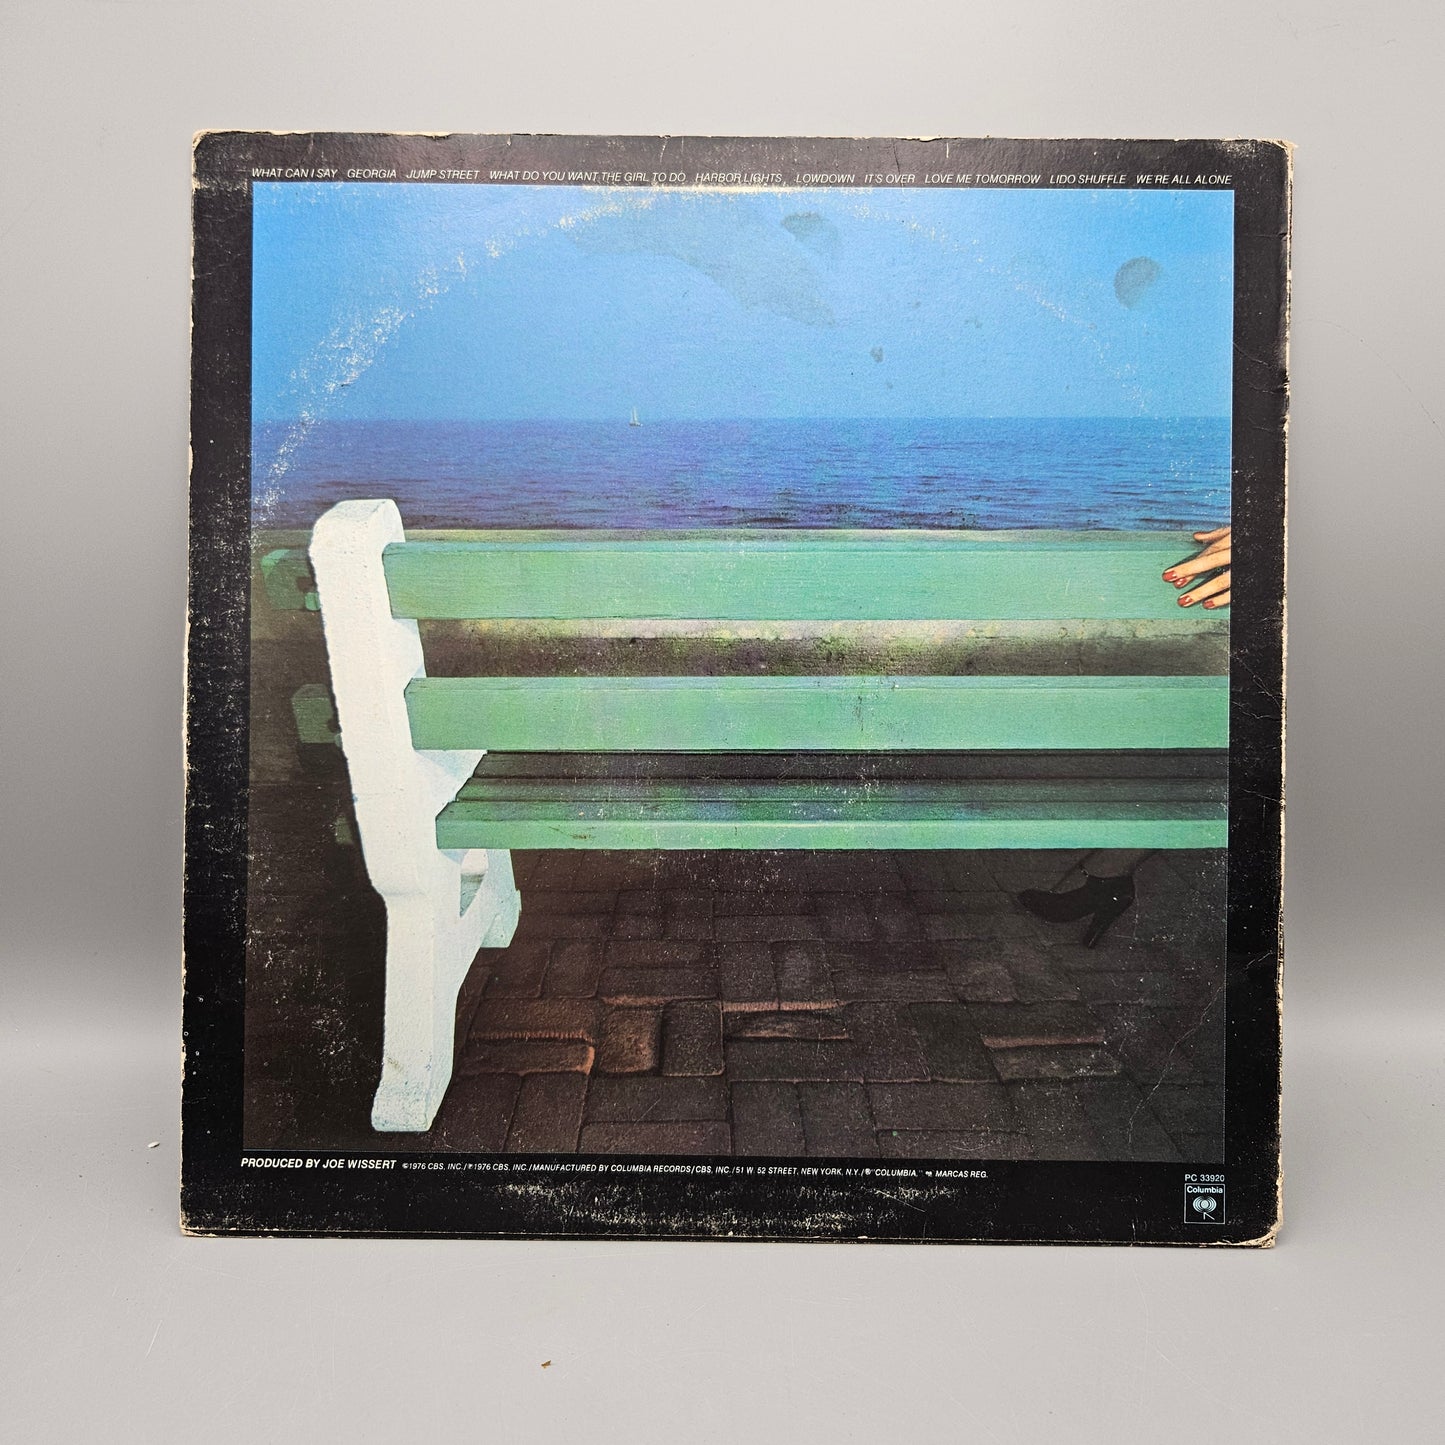 1976 Boz Scaggs - Silk Degrees LP Record